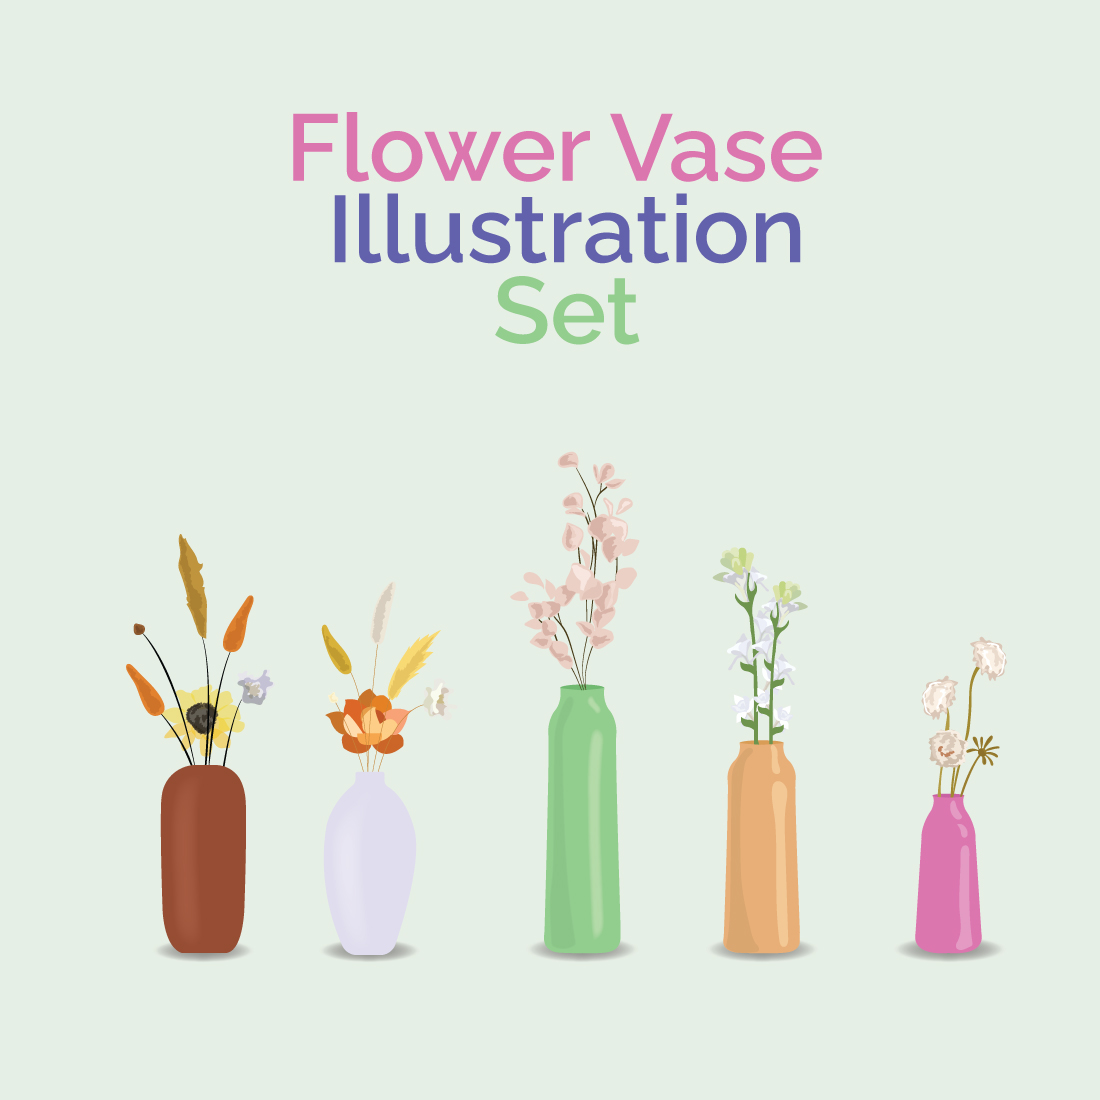 Flower Vase Illustration Set preview image.